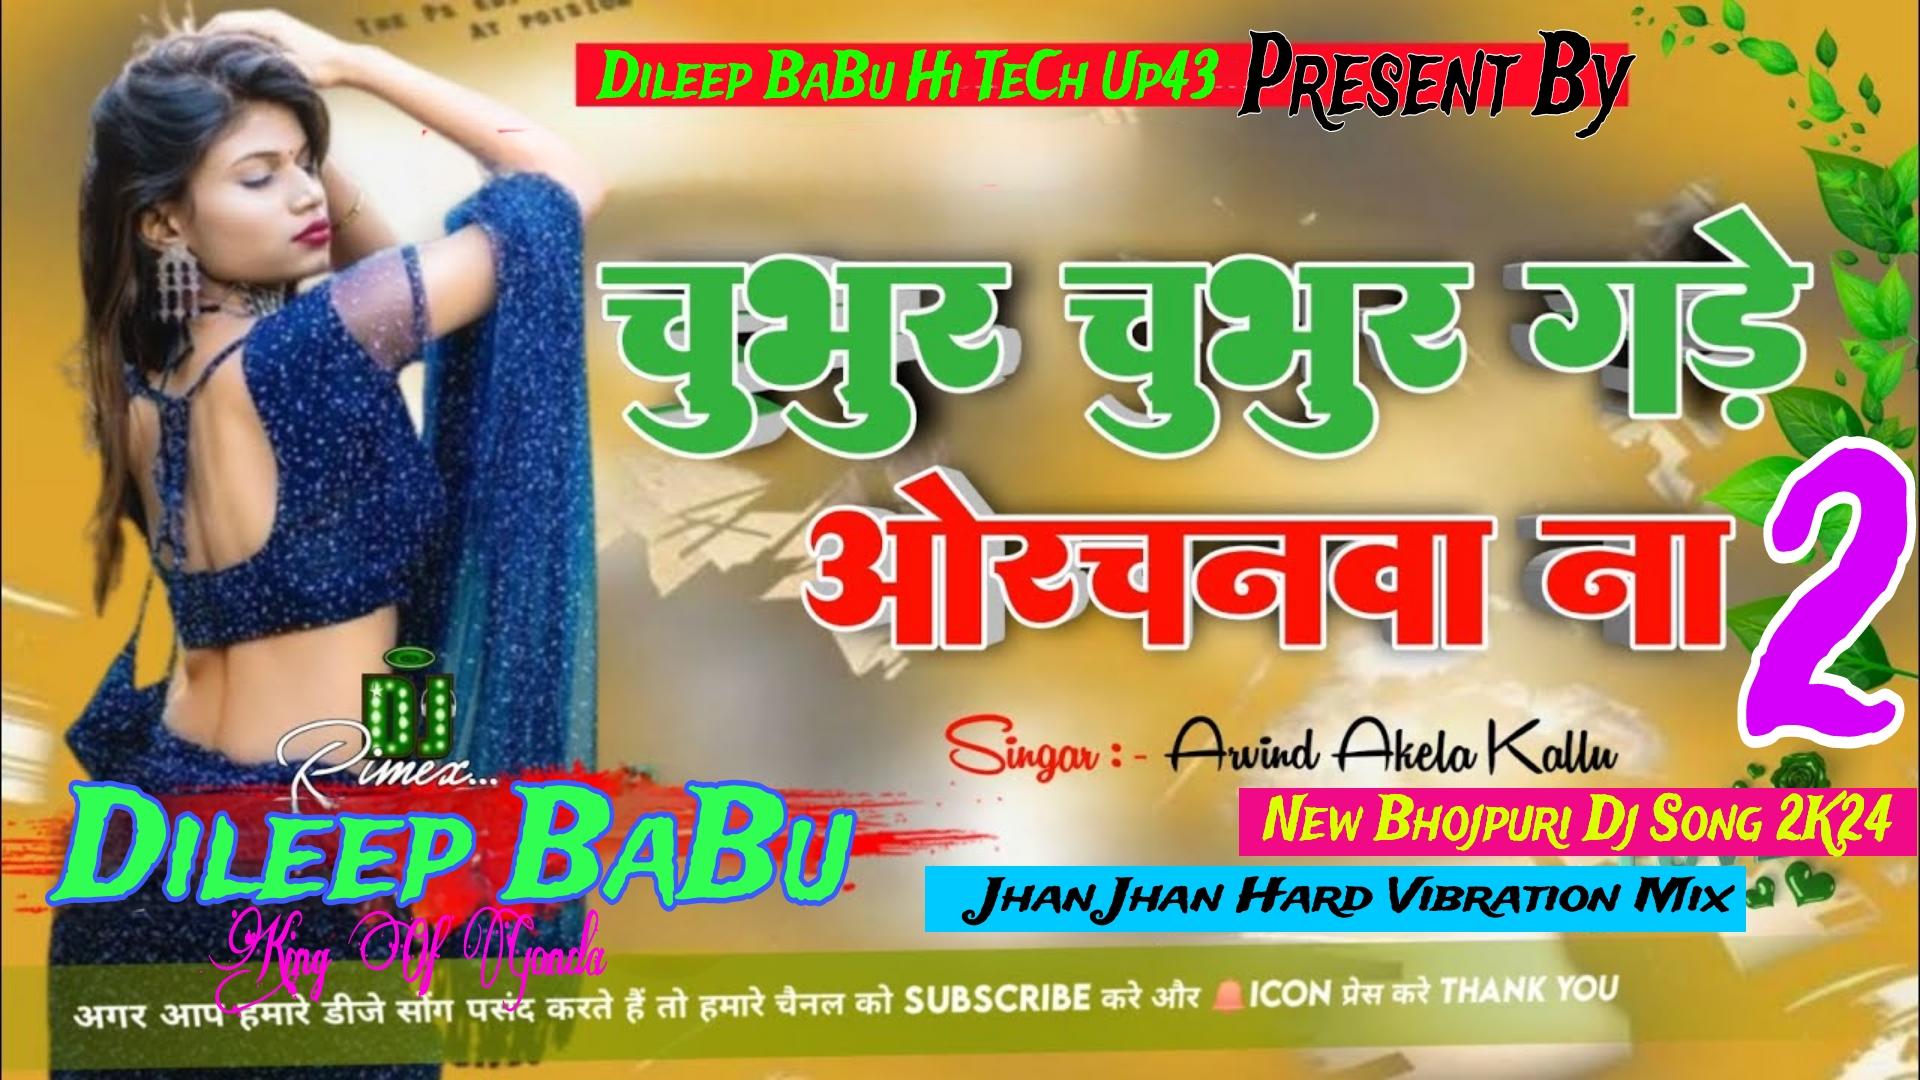 Chubhur Chubhur Kare Onchanwa Na 2 Kallu Ji Jhan Jhan Hard Vibration Mix Dileep BaBu Hi TeCh Up43